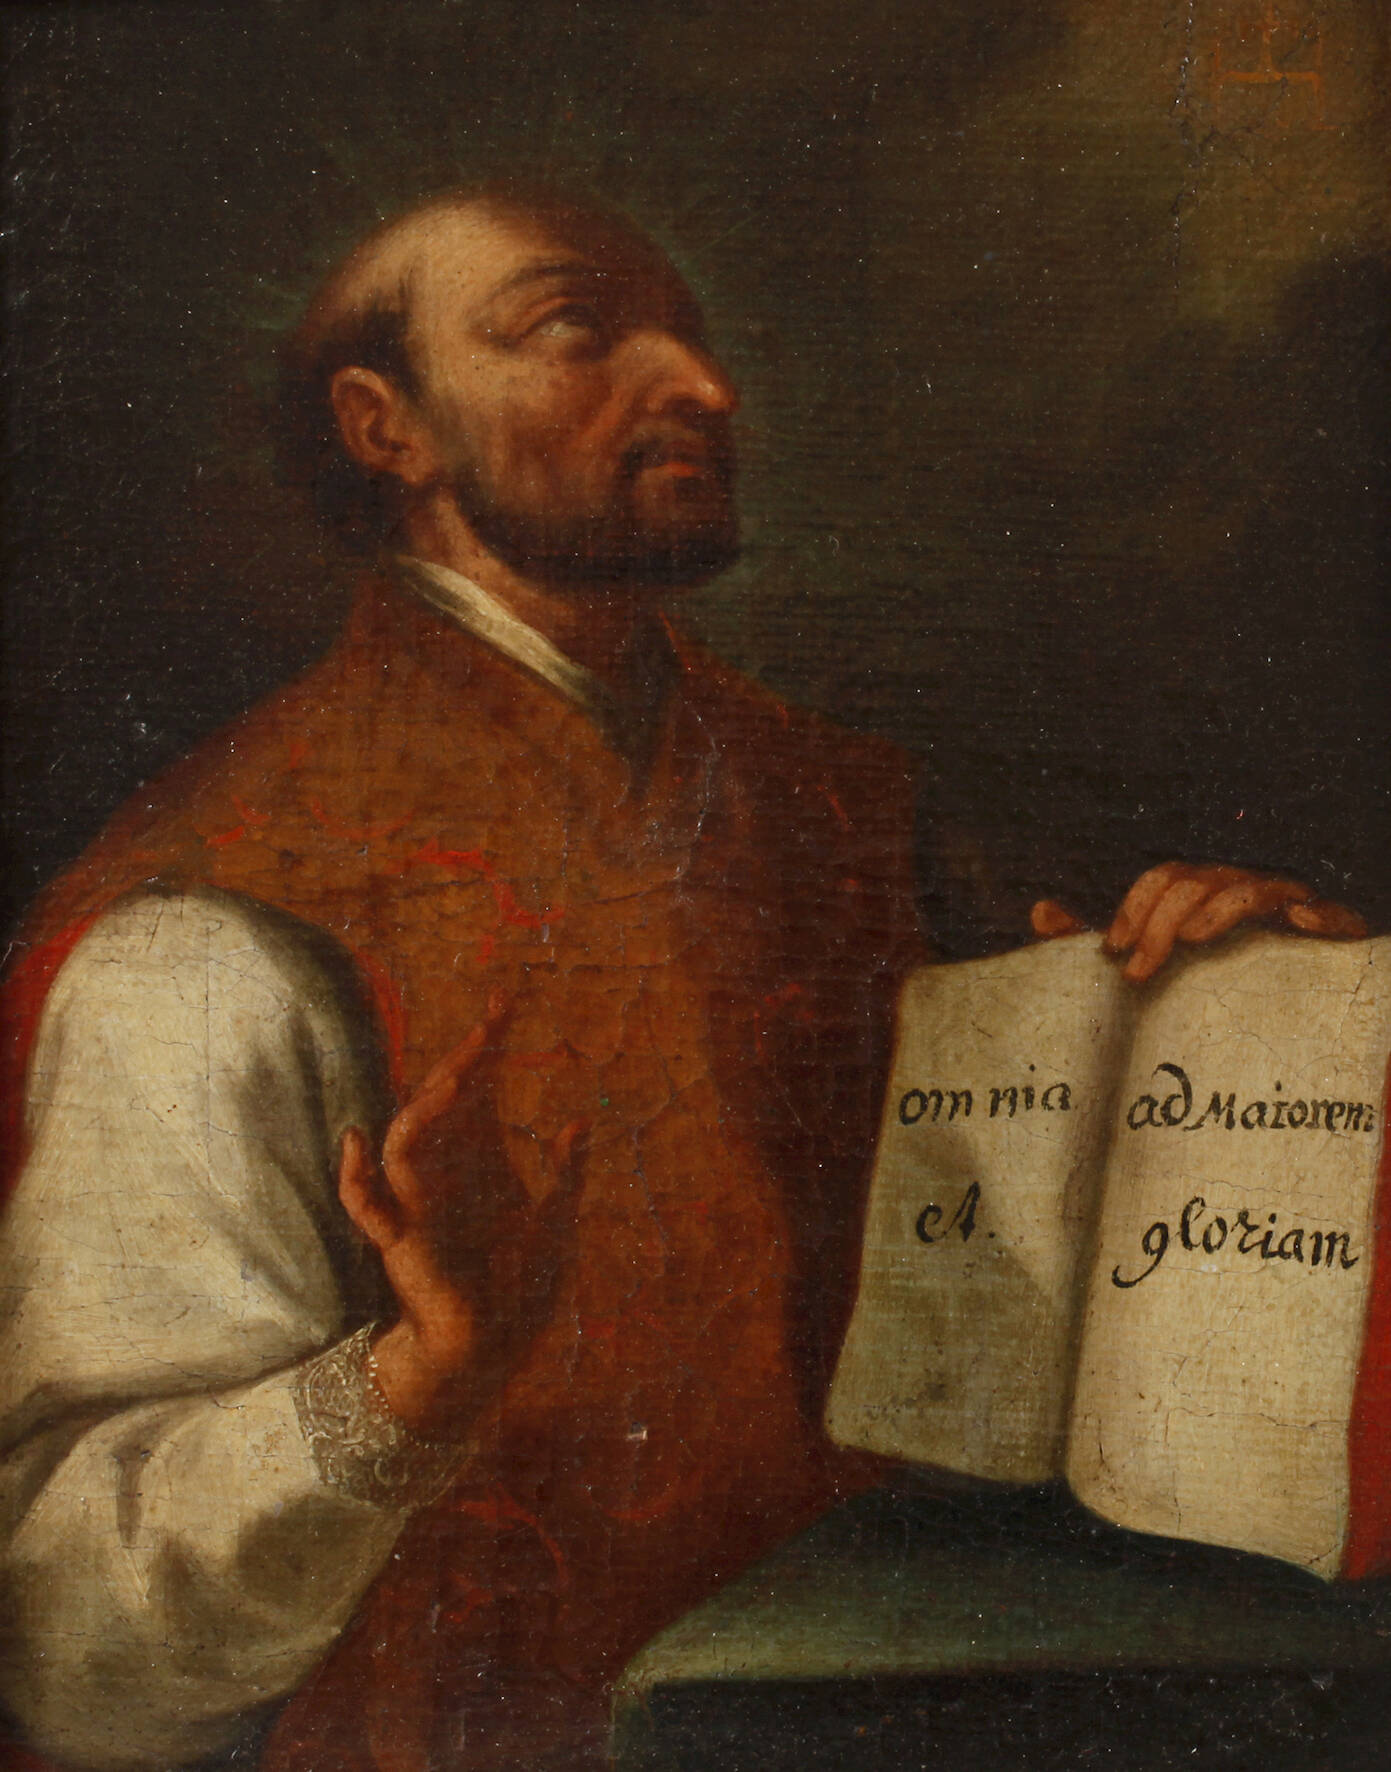 St. Ignatius von Loyola